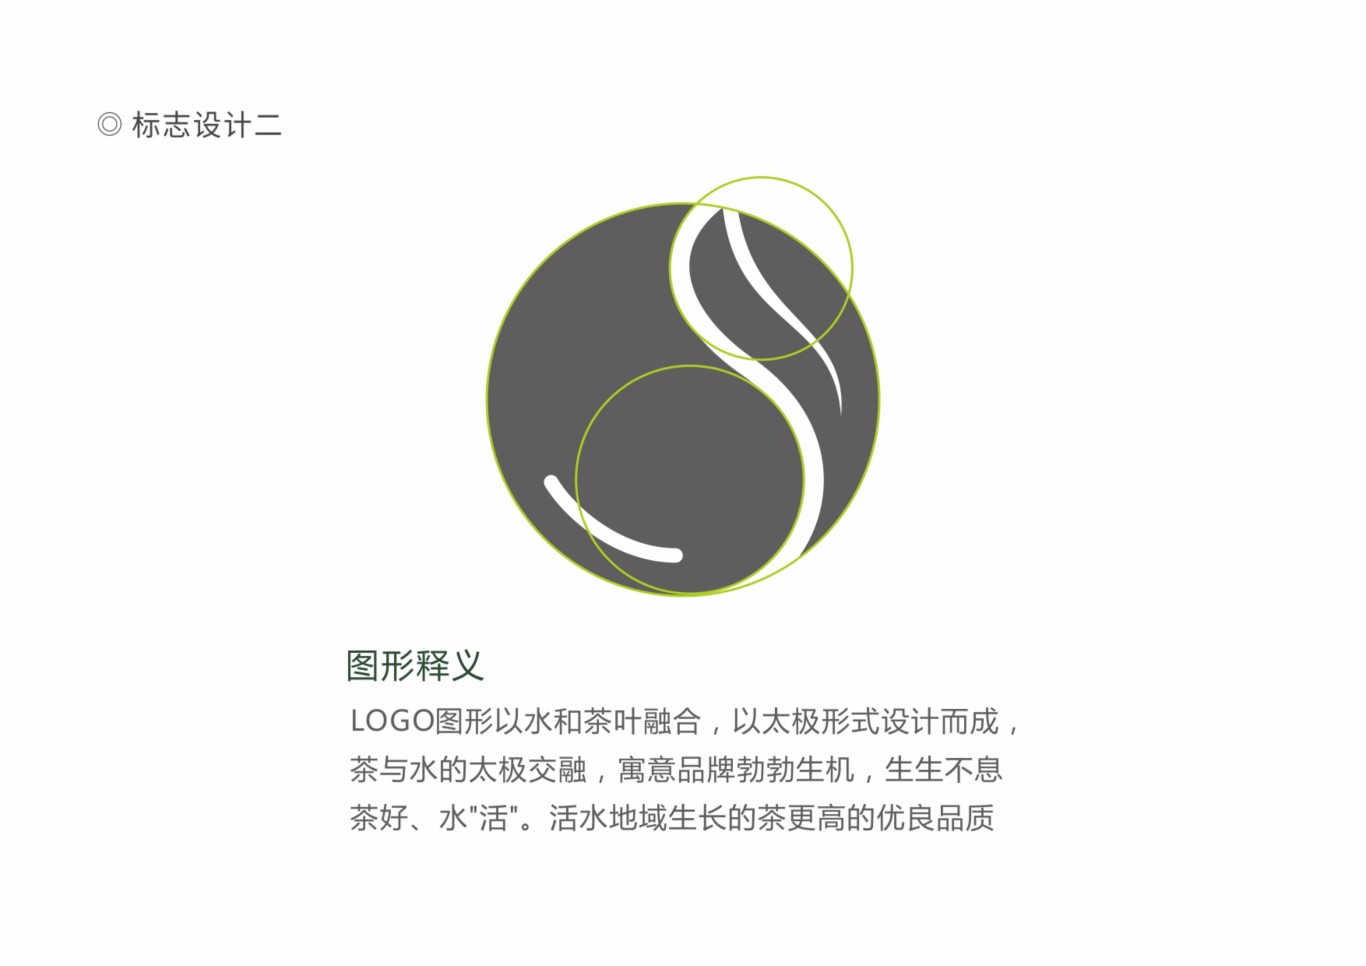 茶品牌LOGO设计图10